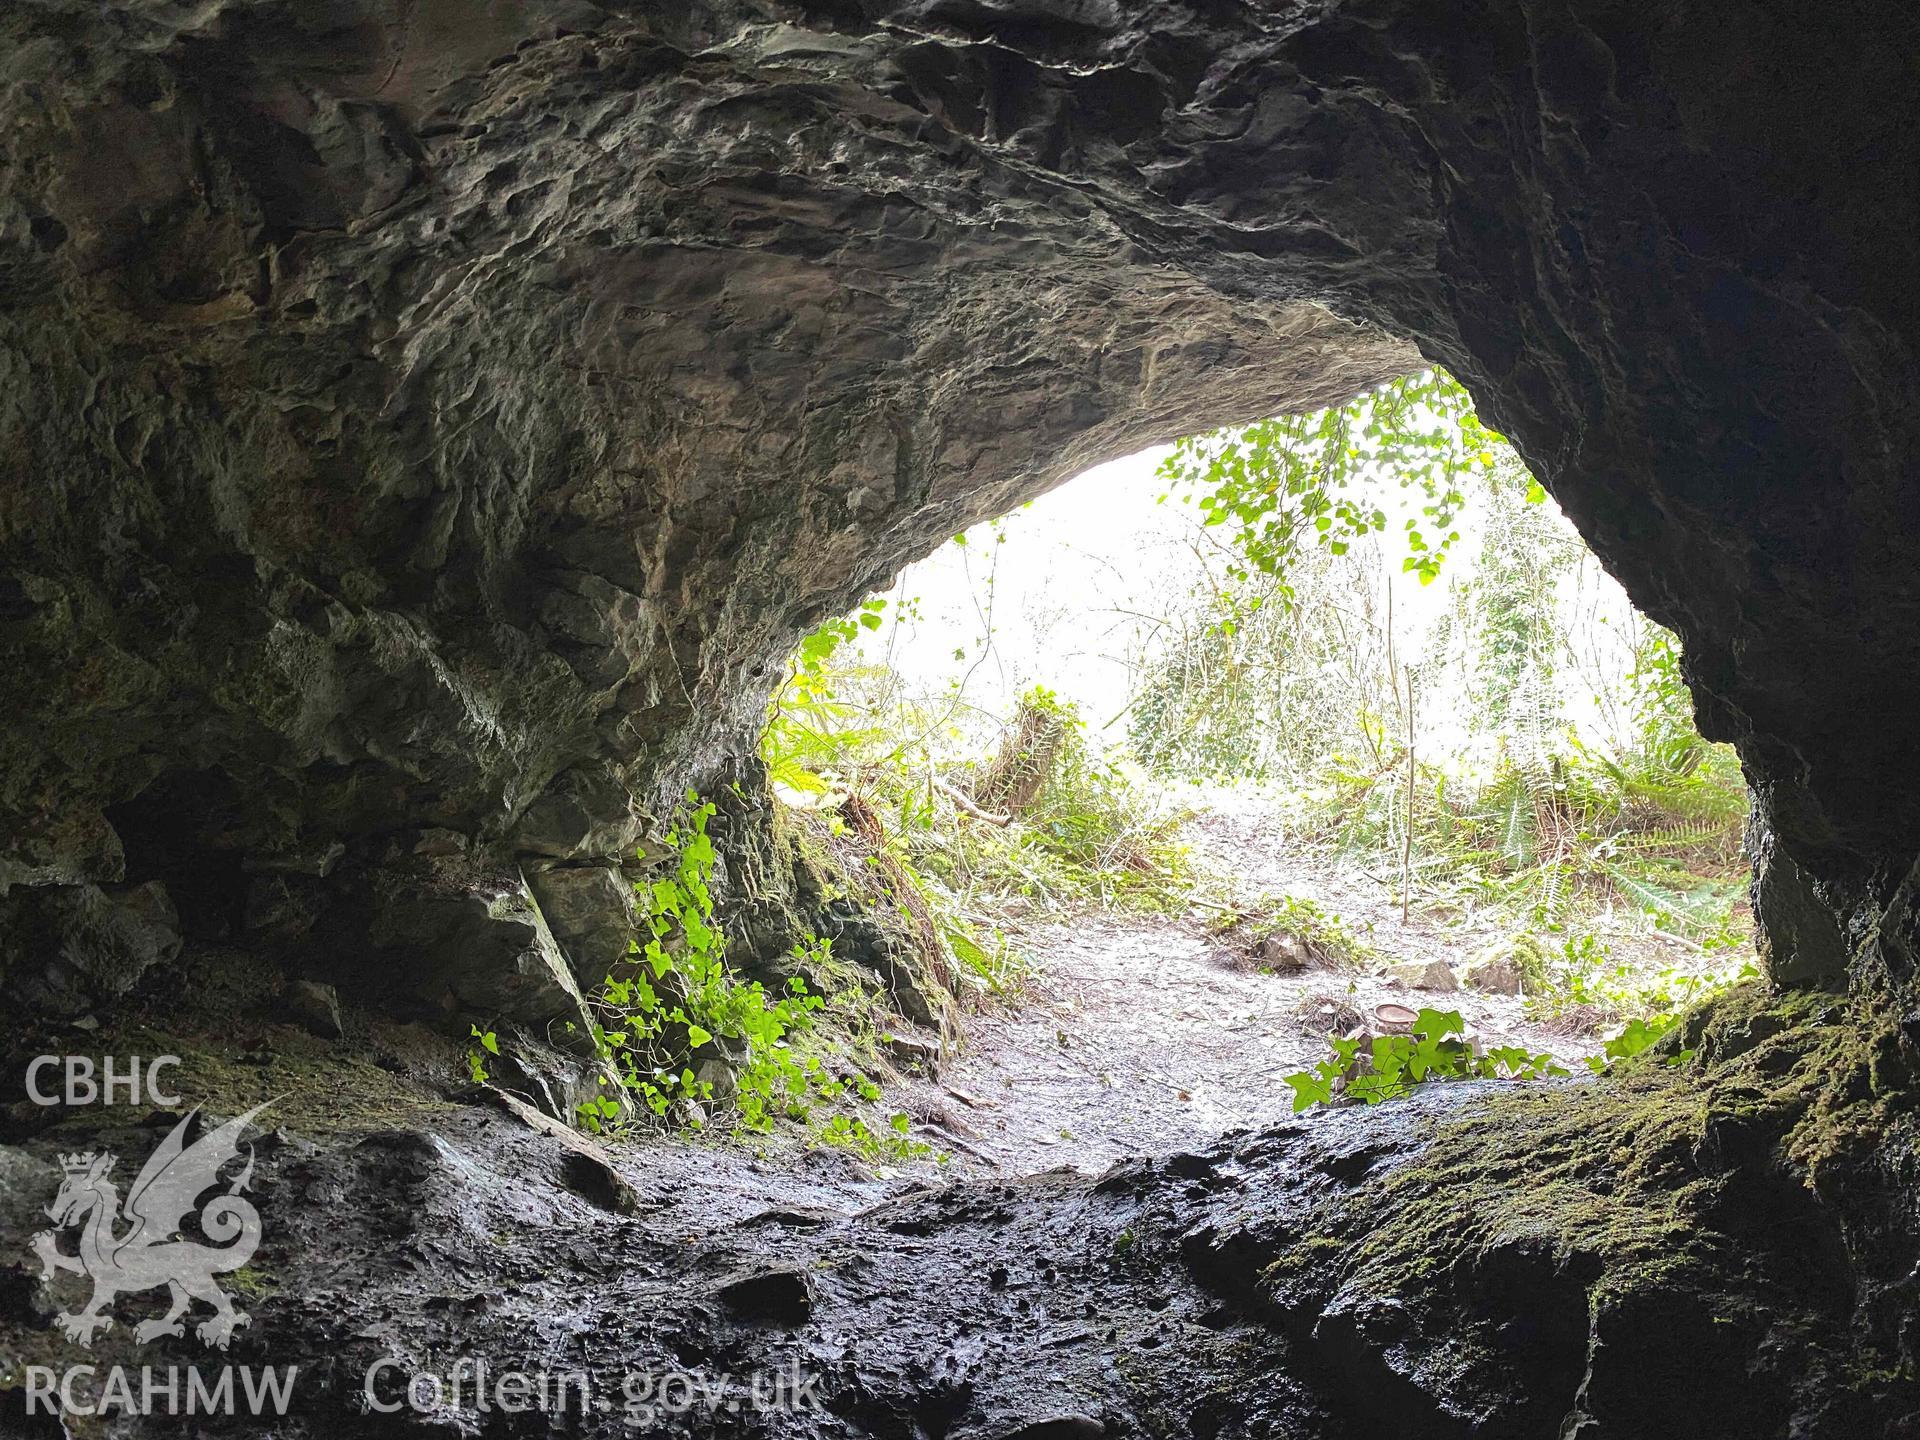 Digital colour photograph showing Cathole cave, Monkton.